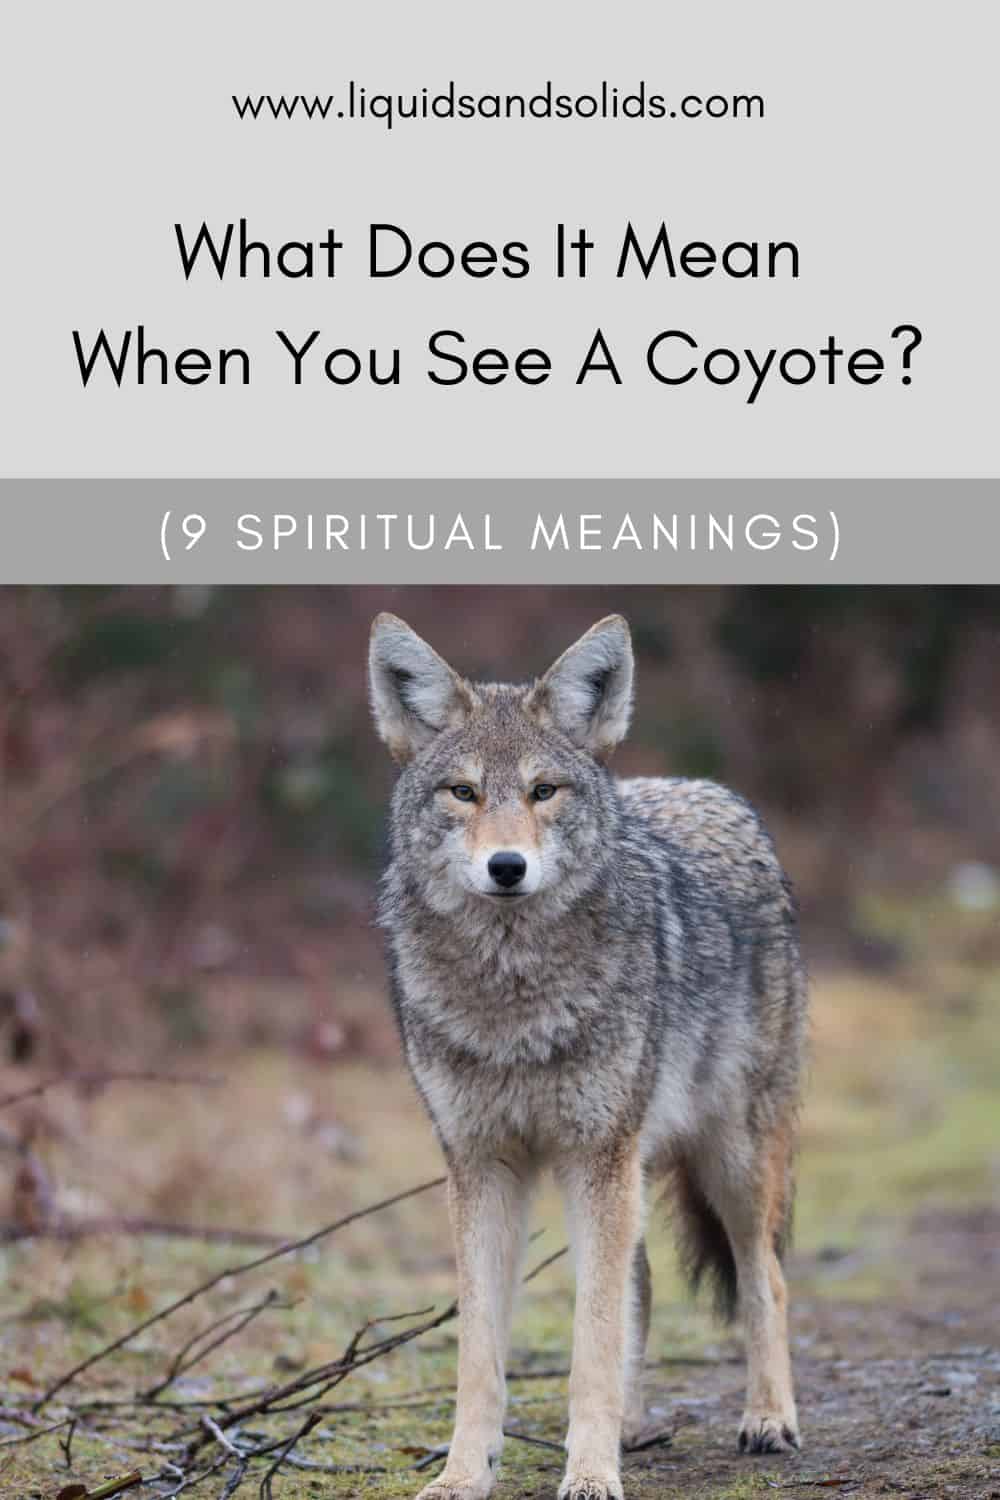  Mida tähendab see, kui sa näed kojooti? (9 vaimset tähendust)